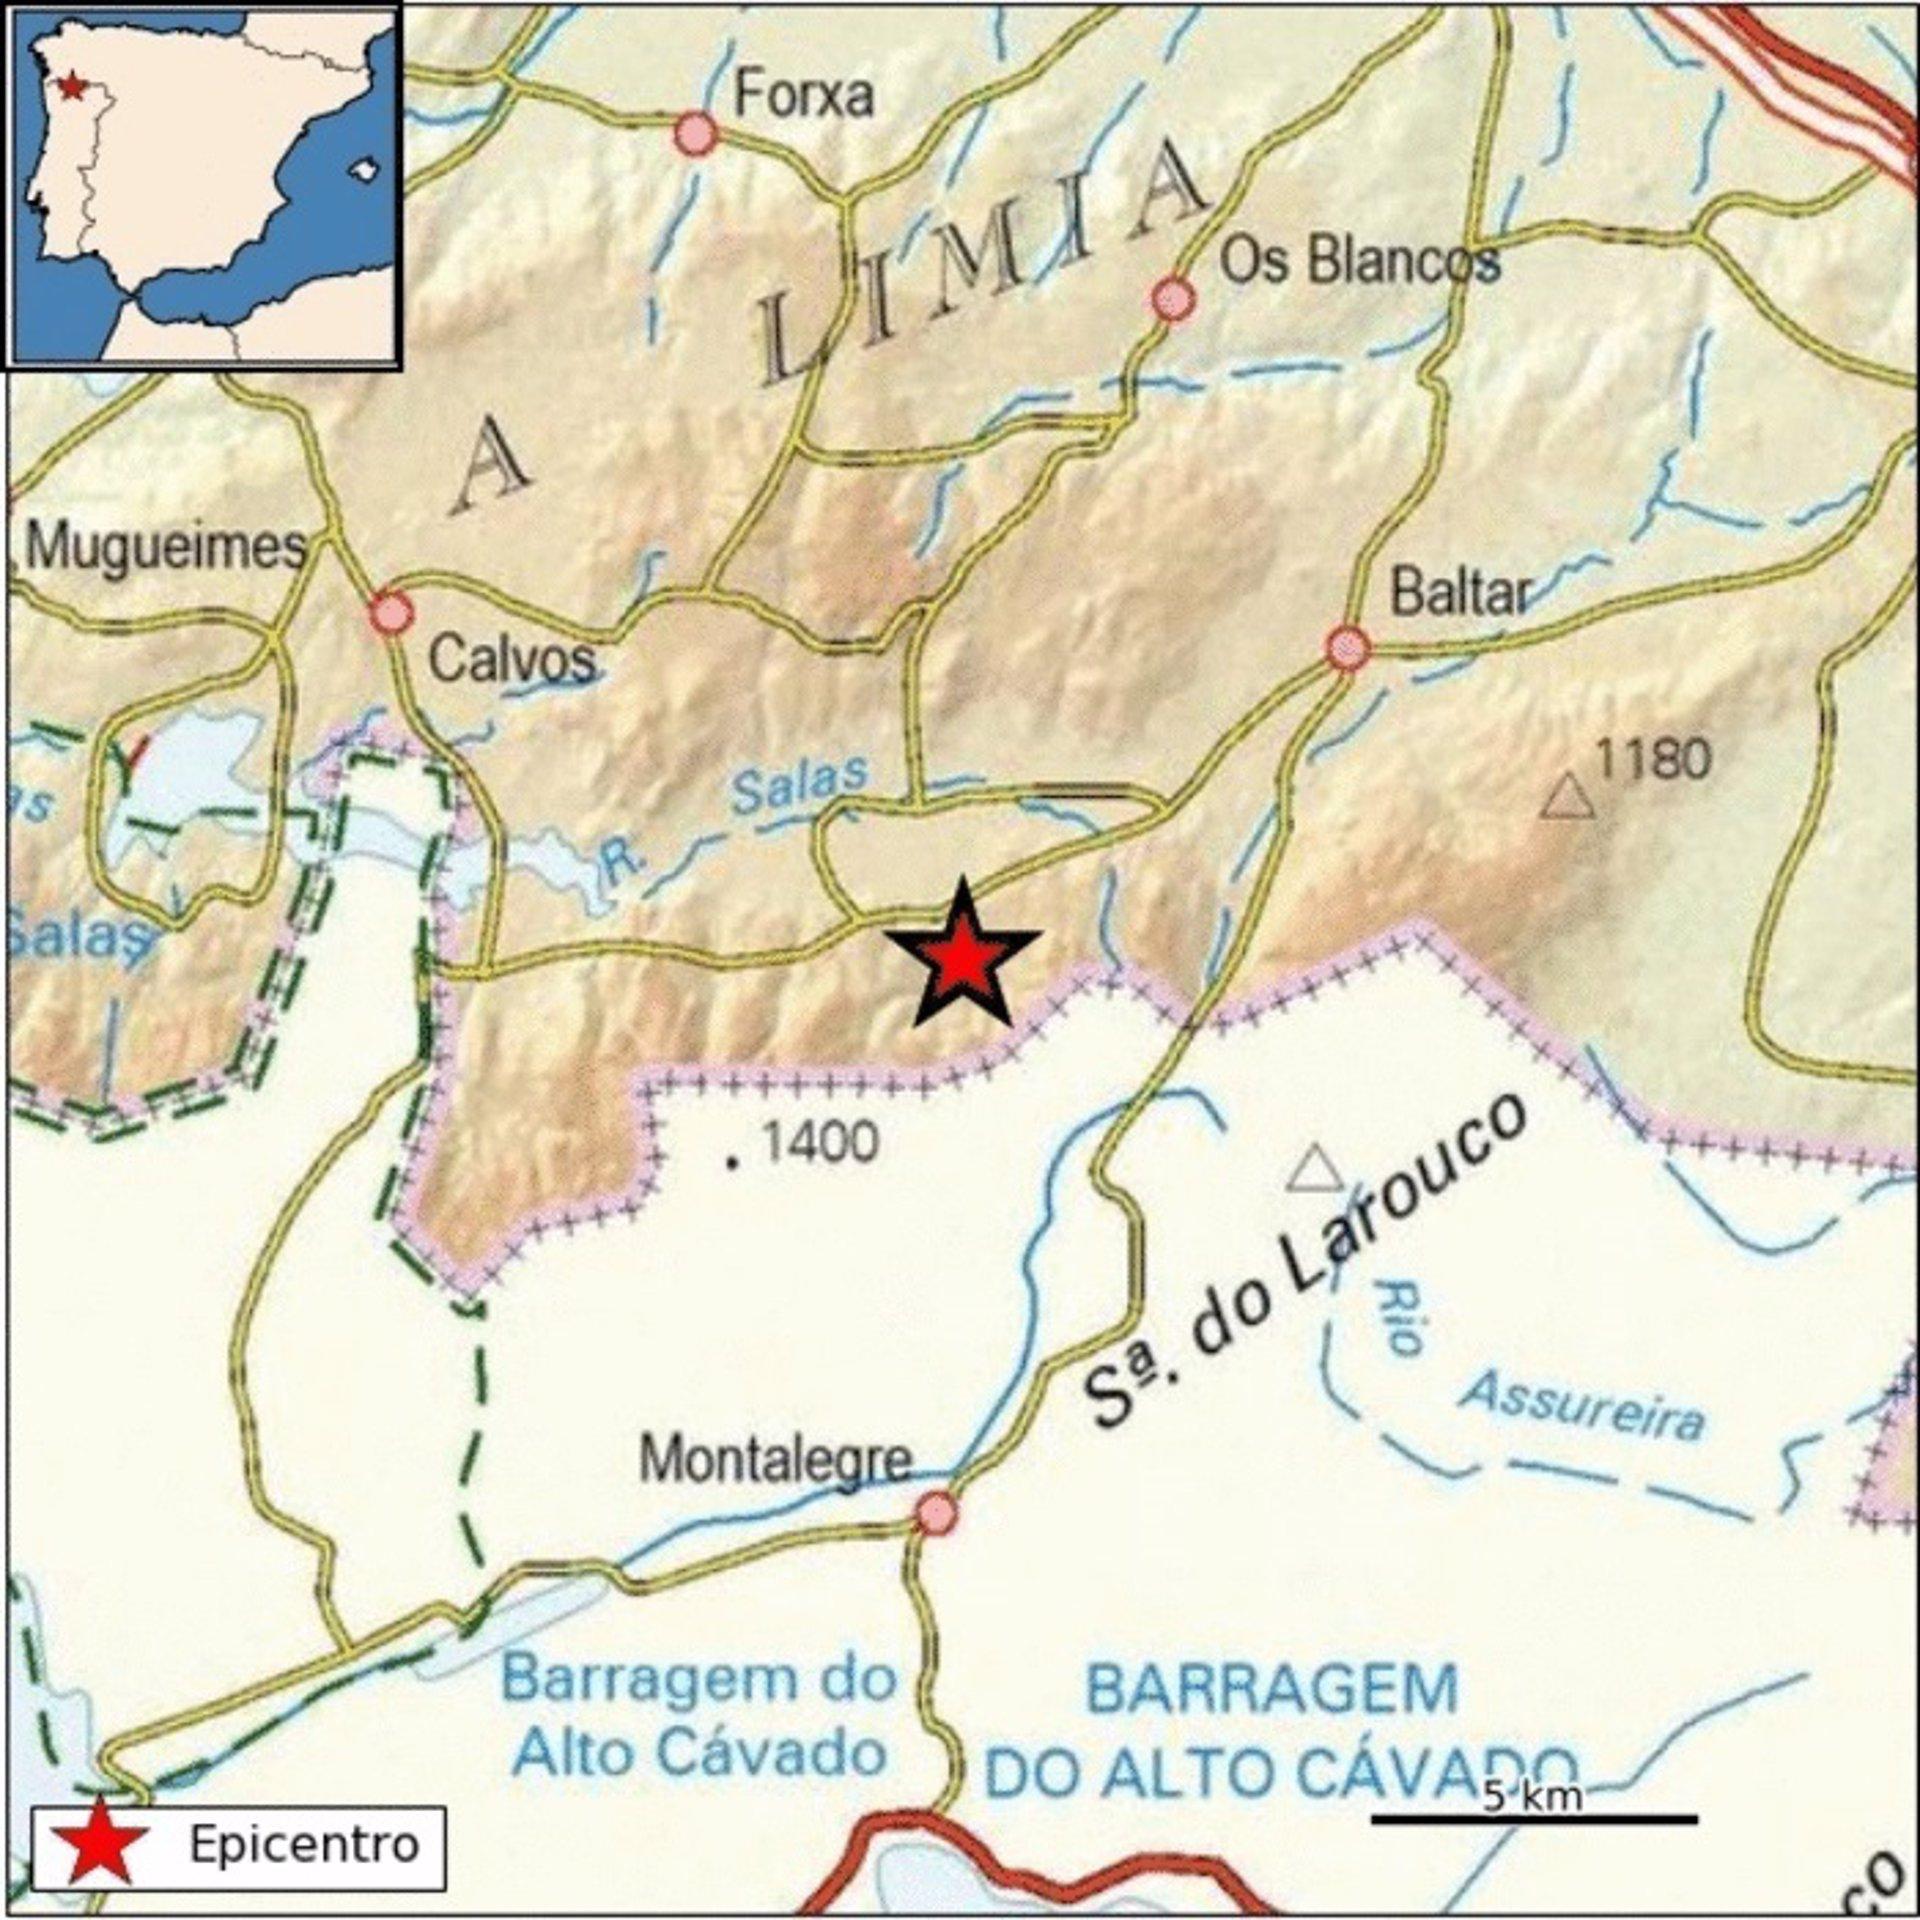 01/05/2021 Mapa del terremoto de 3,2 de magnitud registrado en el municipio ourensano de Baltar
SOCIEDAD AUTONOMÍAS
INSTITUTO GEOGRÁFICO NACIONAL